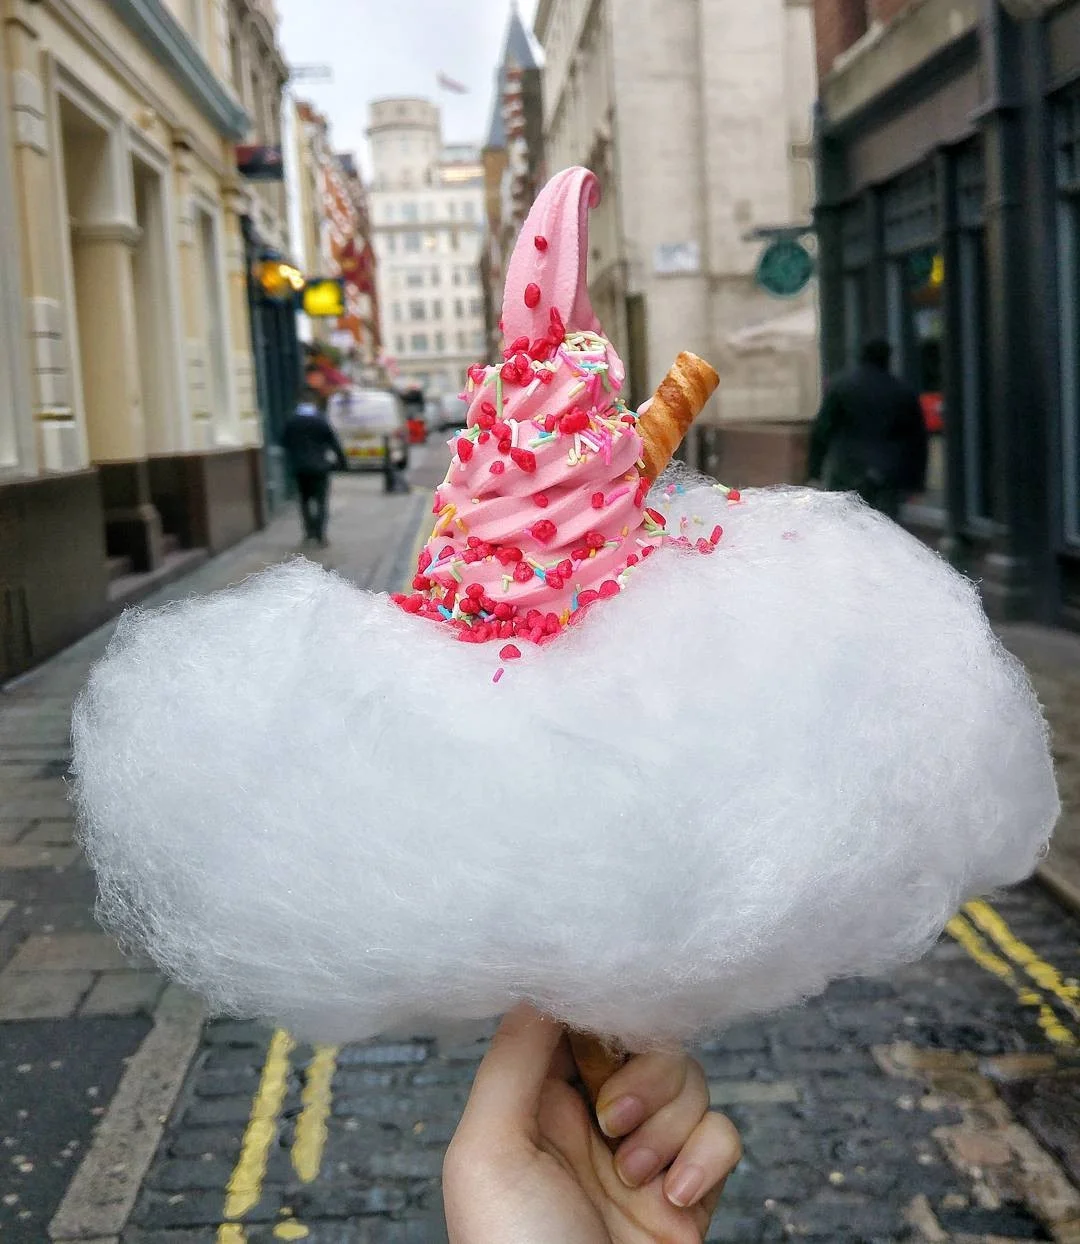 Tasty-тренд: мороженое в сахарной вате - фото 343583